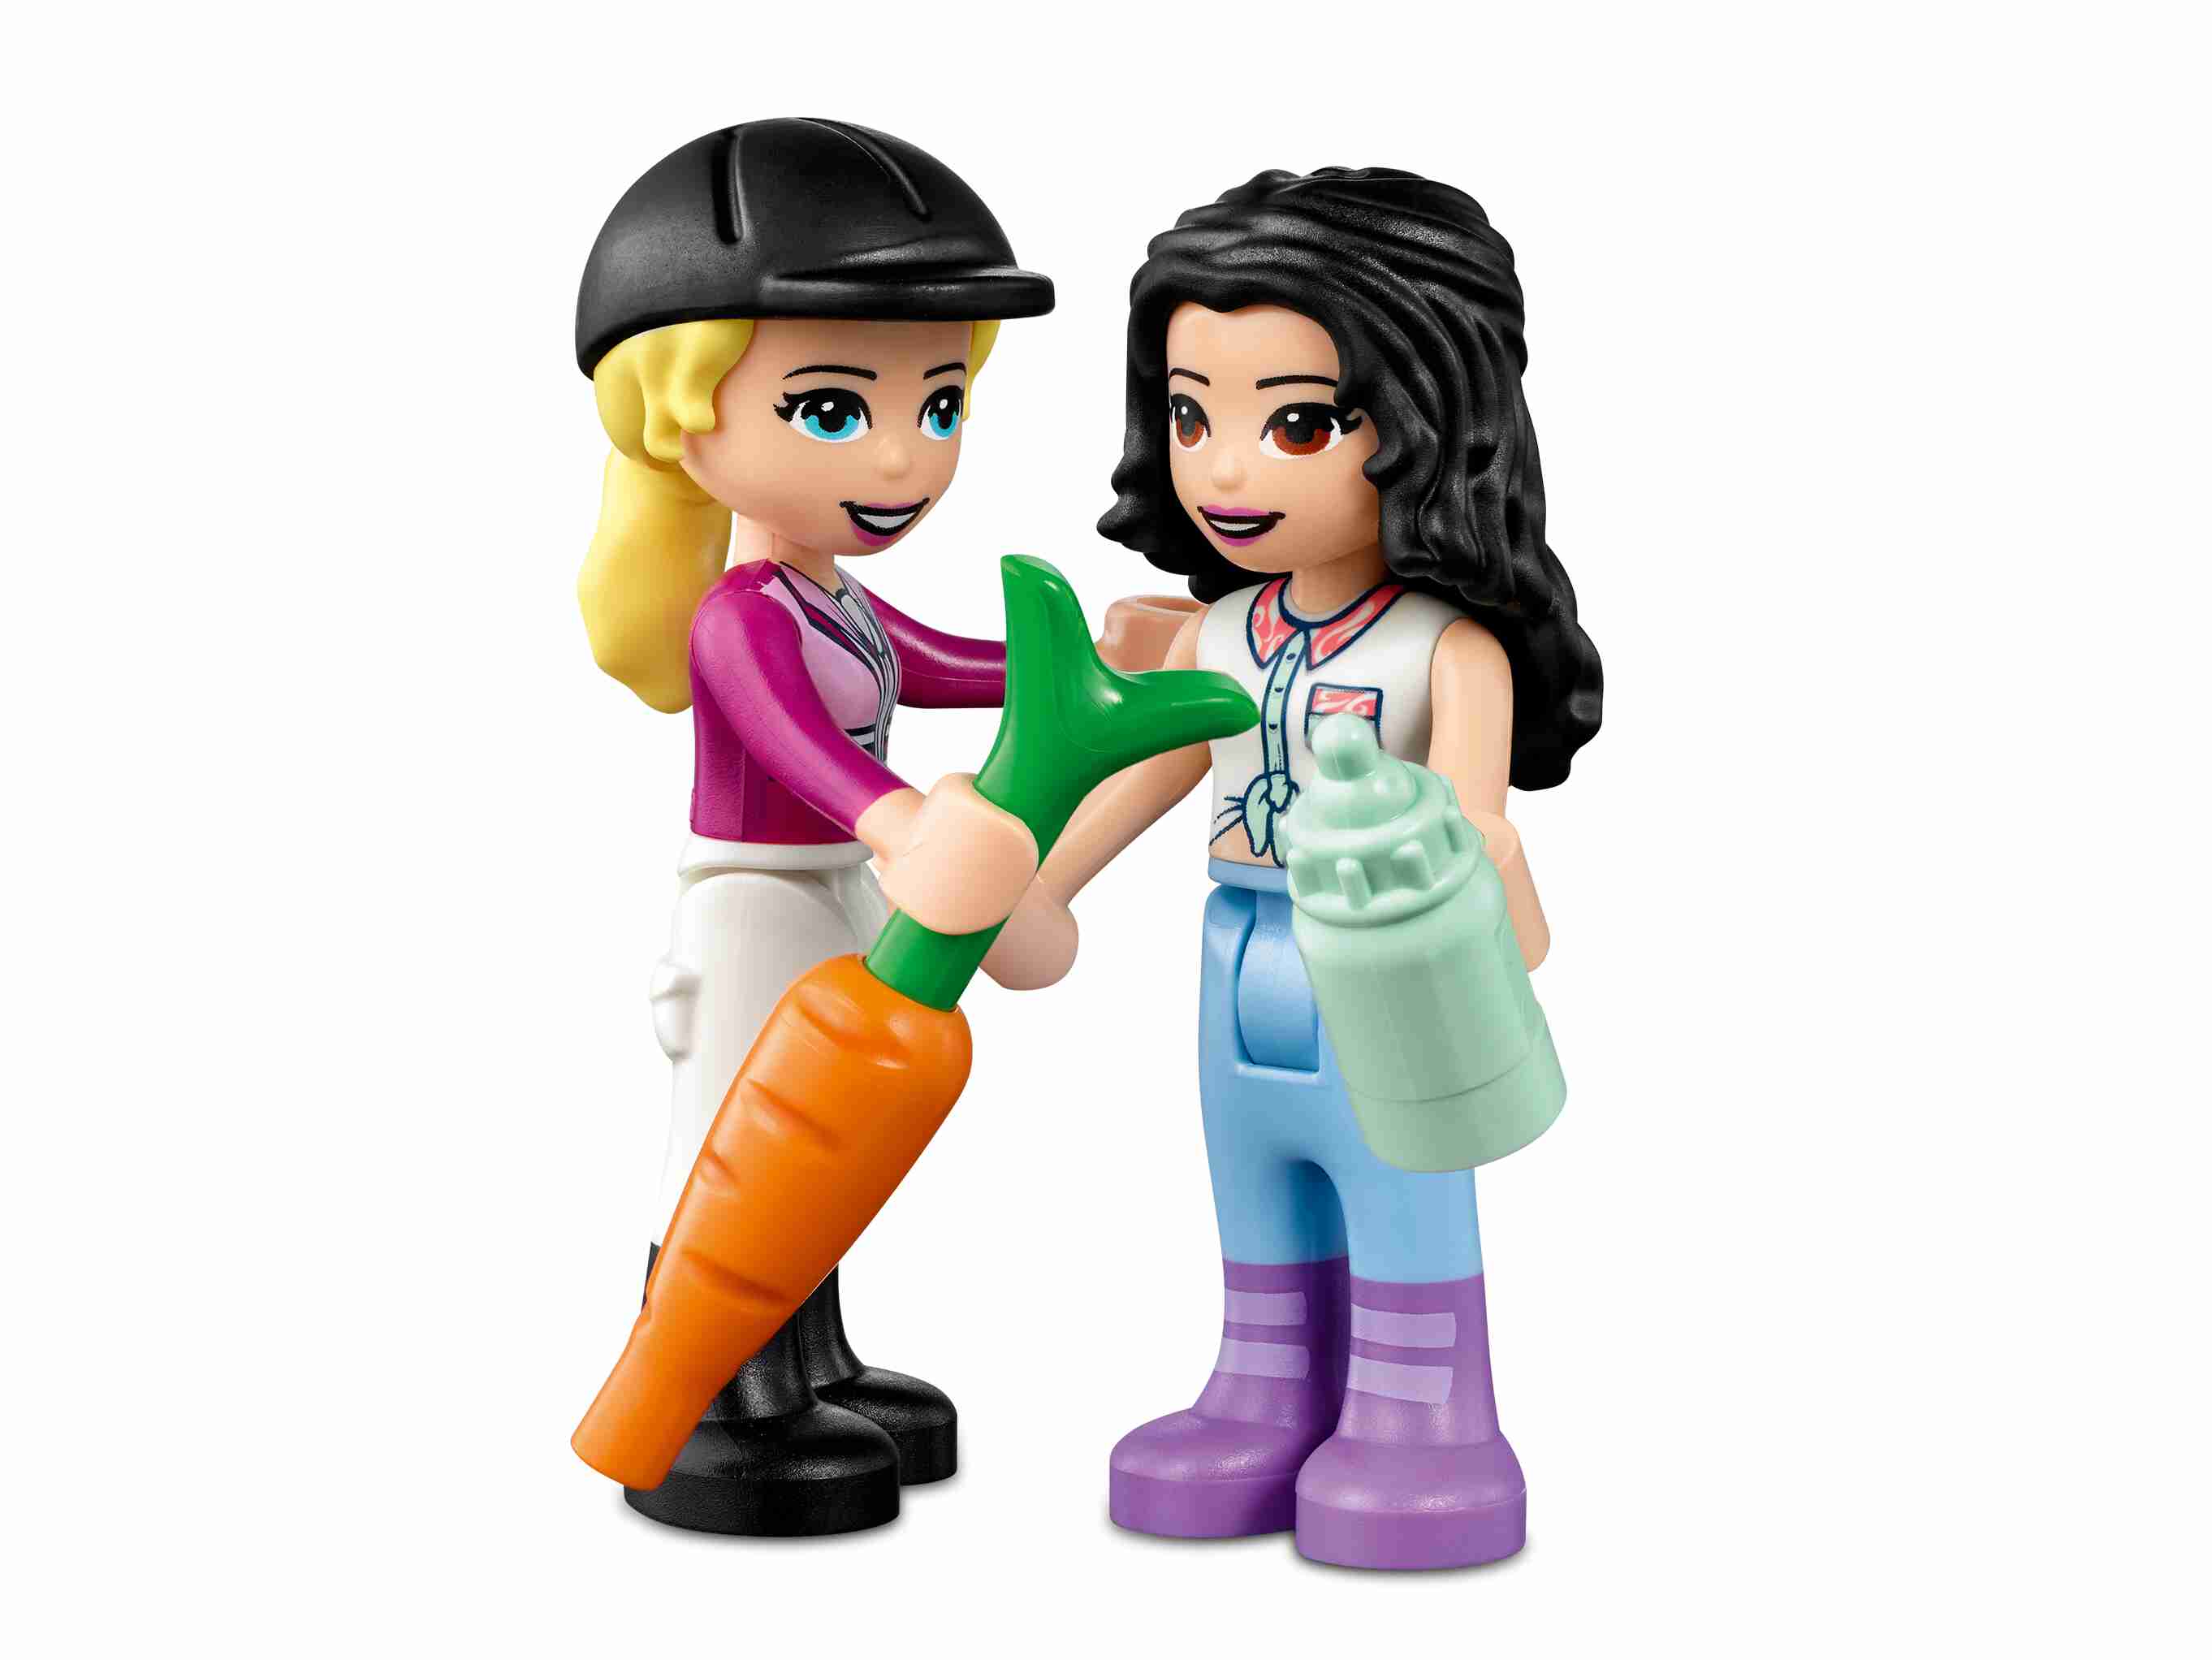 LEGO 41441 Friends Trainingskoppel und Pferdeanhänger, Spielzeug ab 4 Jahre